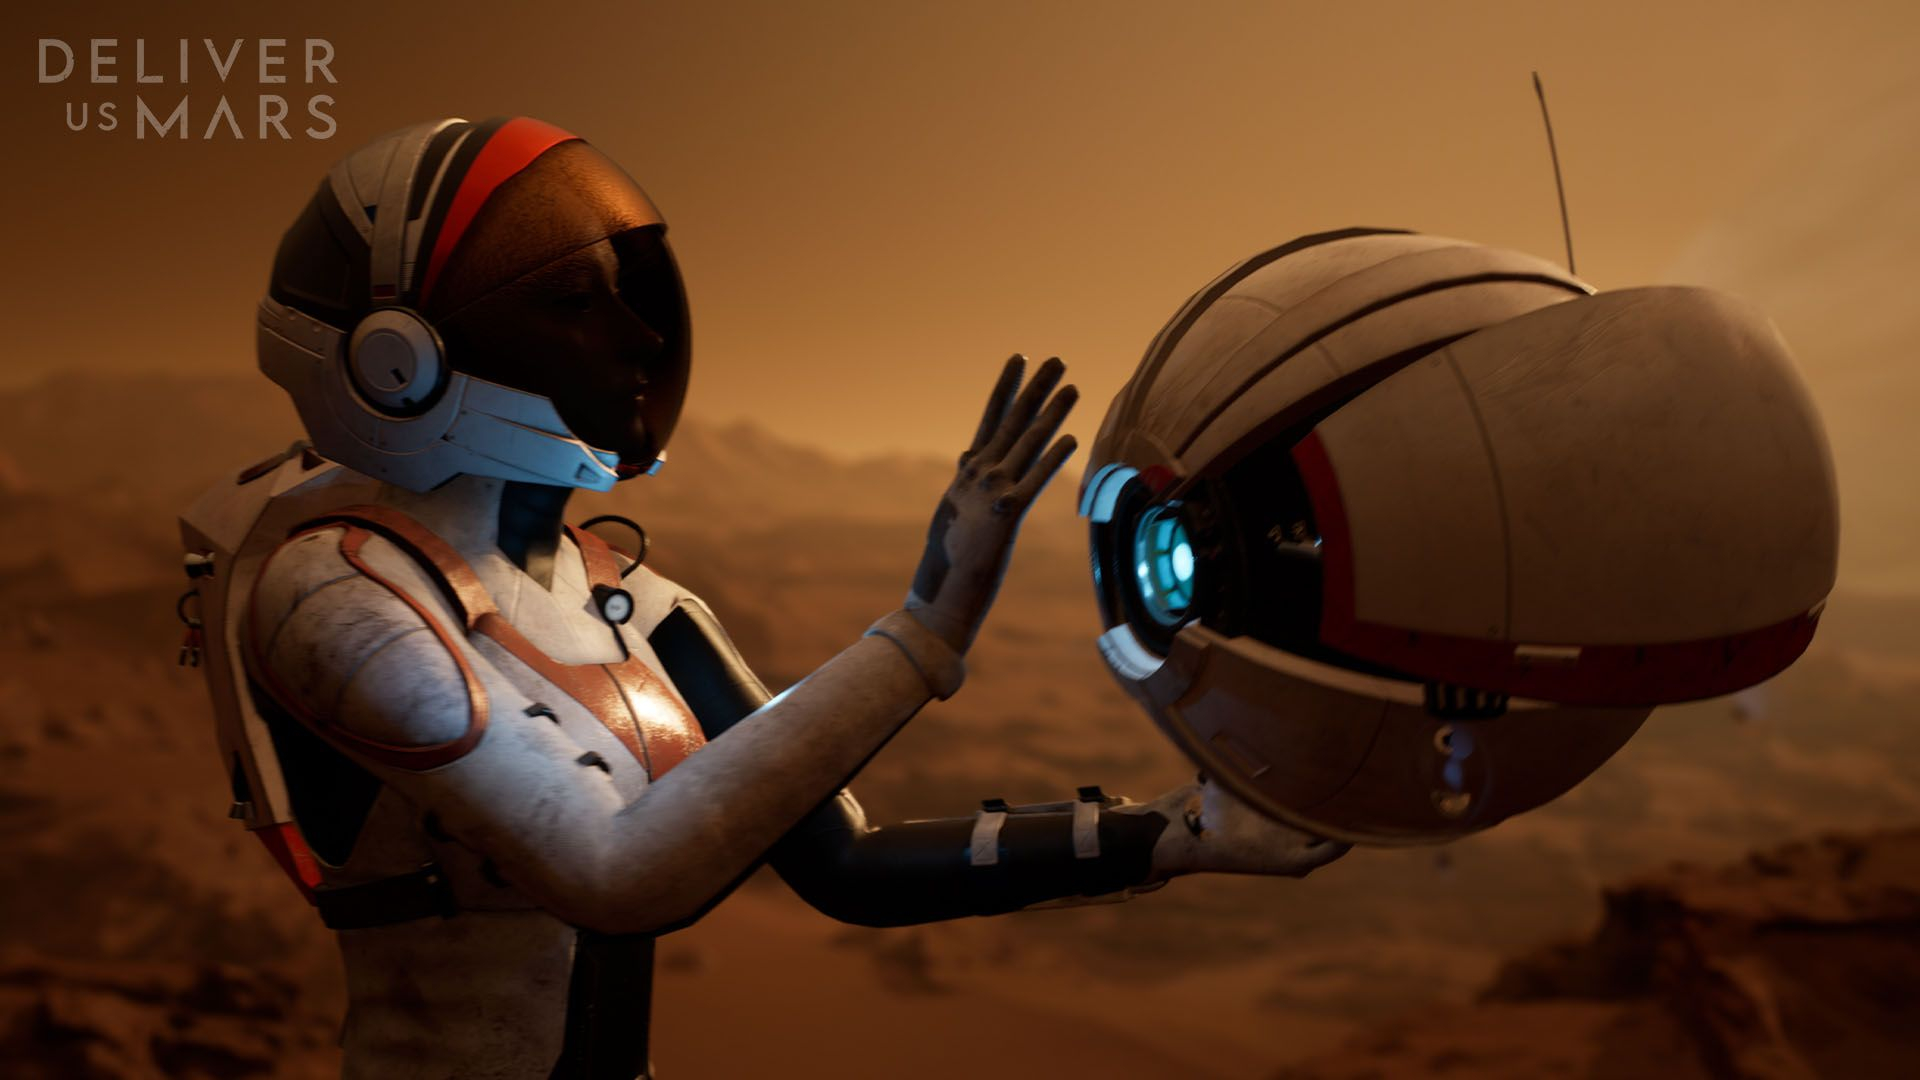 13+ минут нового геймплея научно-фантастической игры Deliver Us Mars